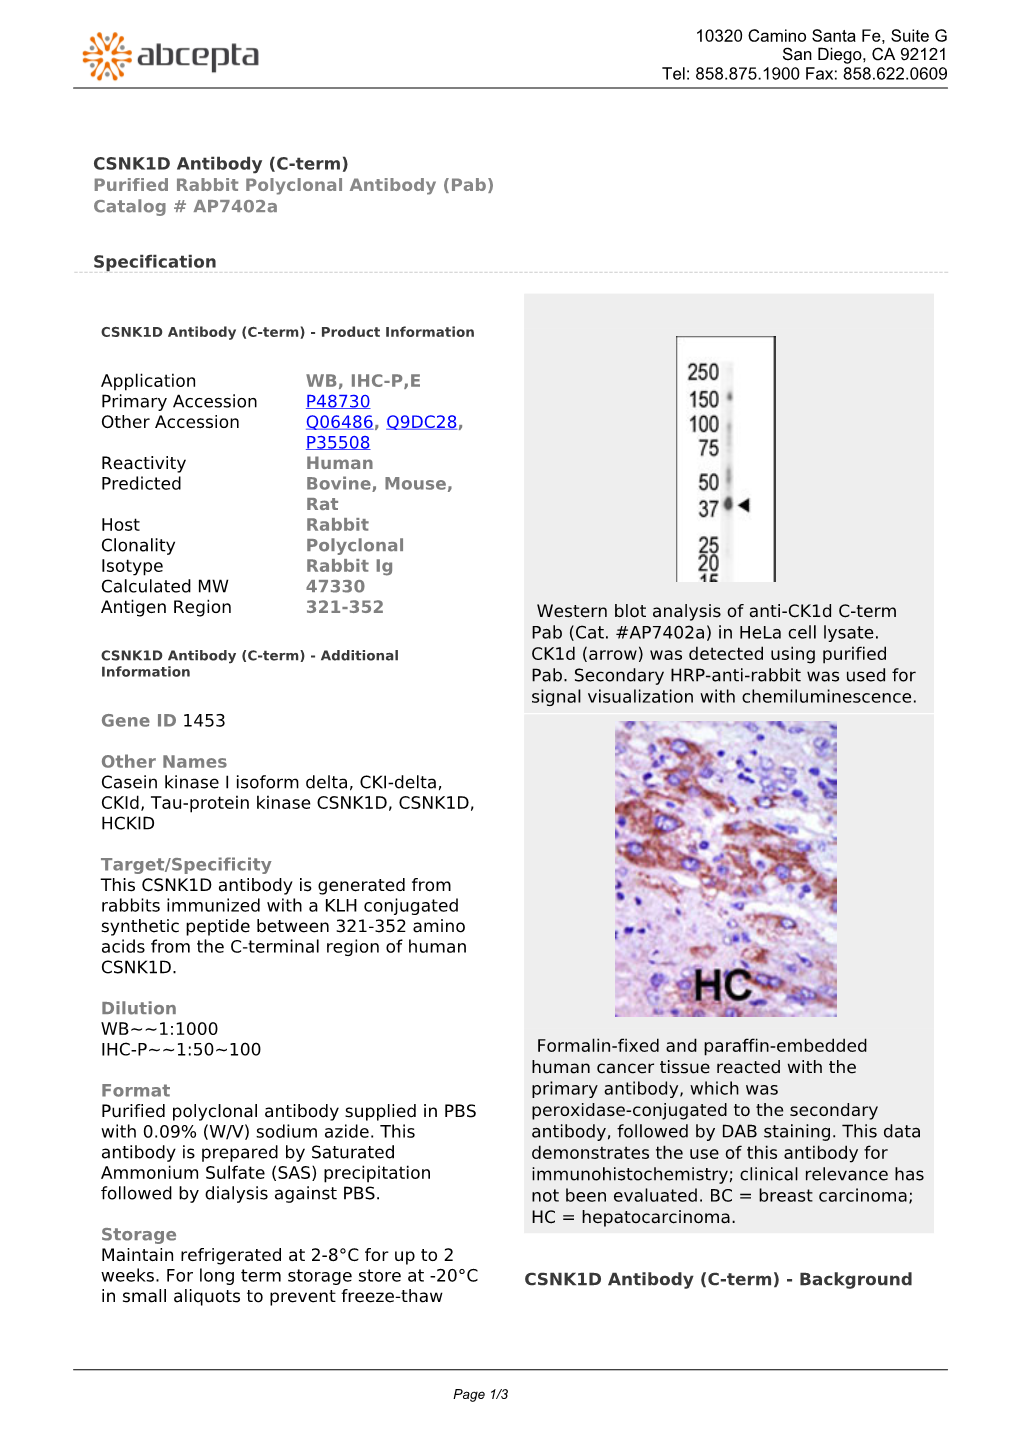 CSNK1D Antibody (C-Term) Purified Rabbit Polyclonal Antibody (Pab) Catalog # Ap7402a